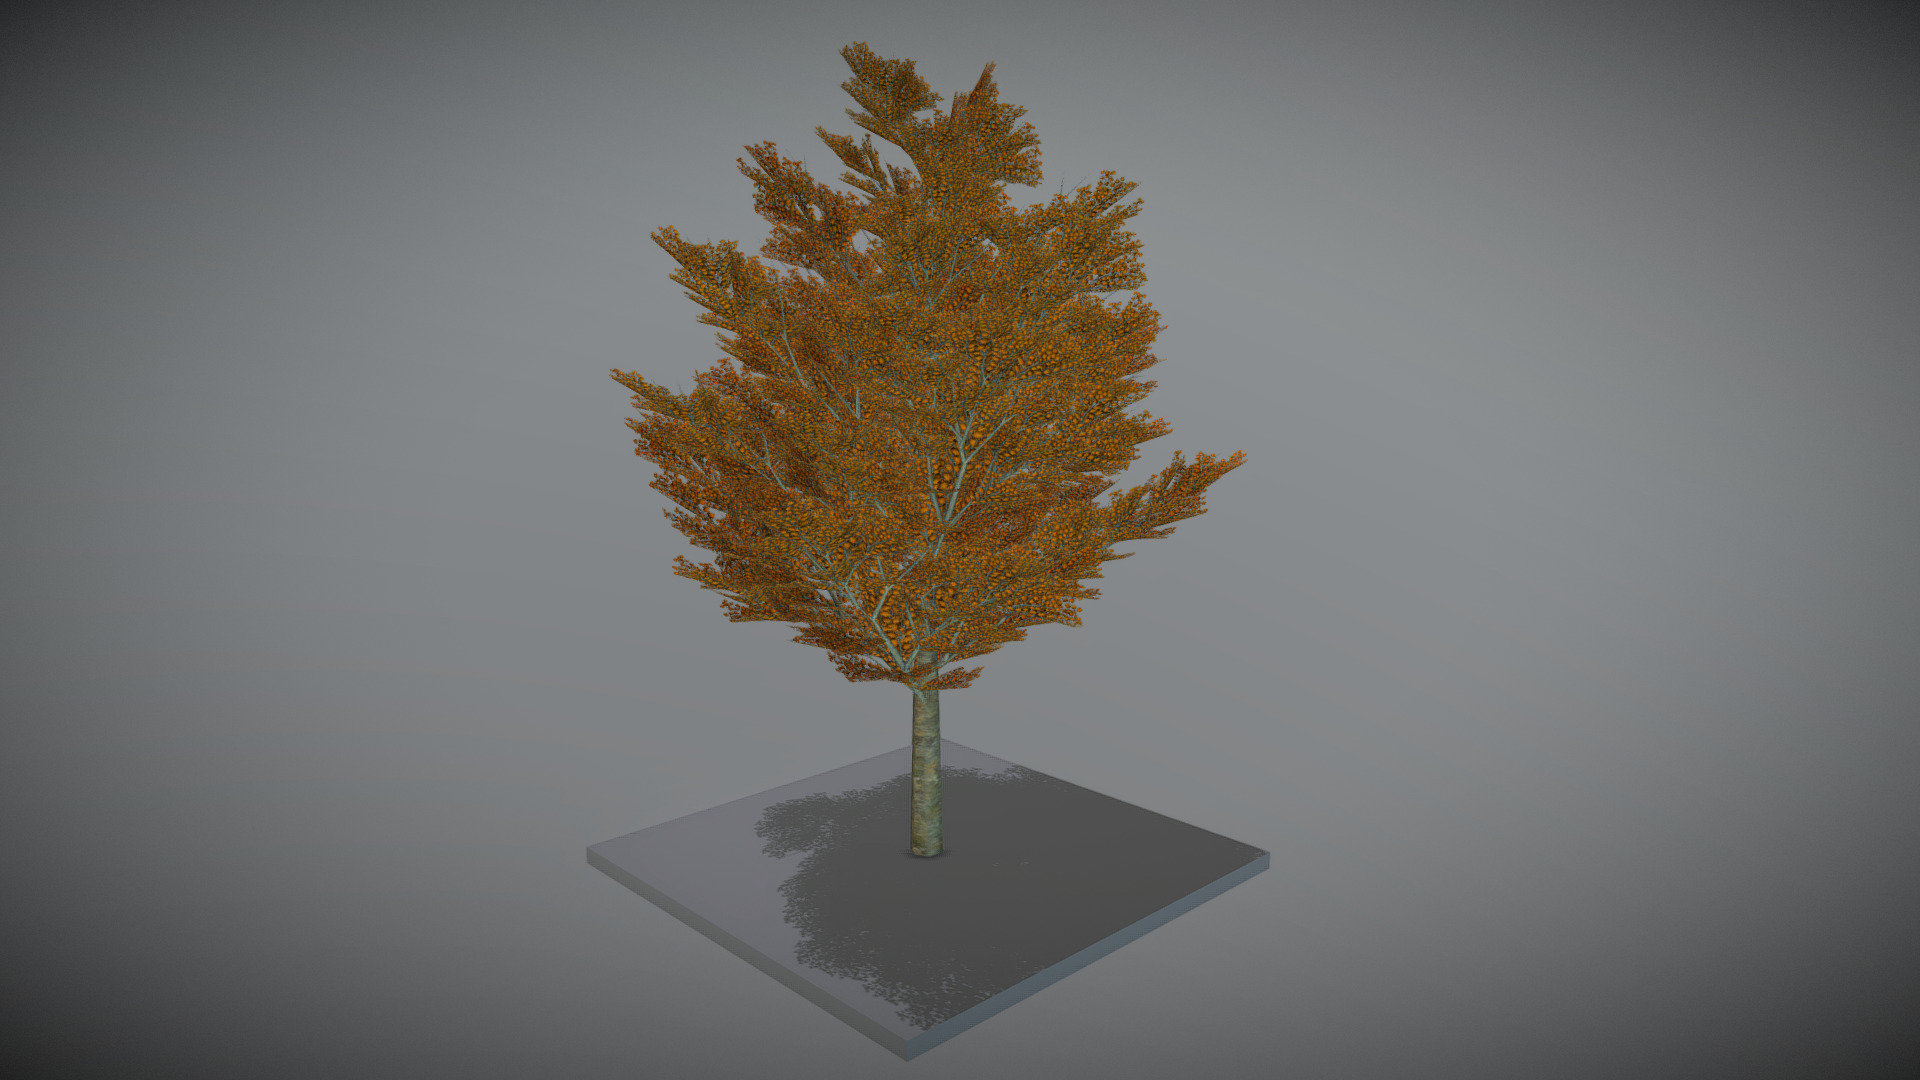 21 Meter Platane im Herbst.



Aus dem VIS-All 3d-baeume-4

 



Modelliert und texturiert mit Blender 3d model